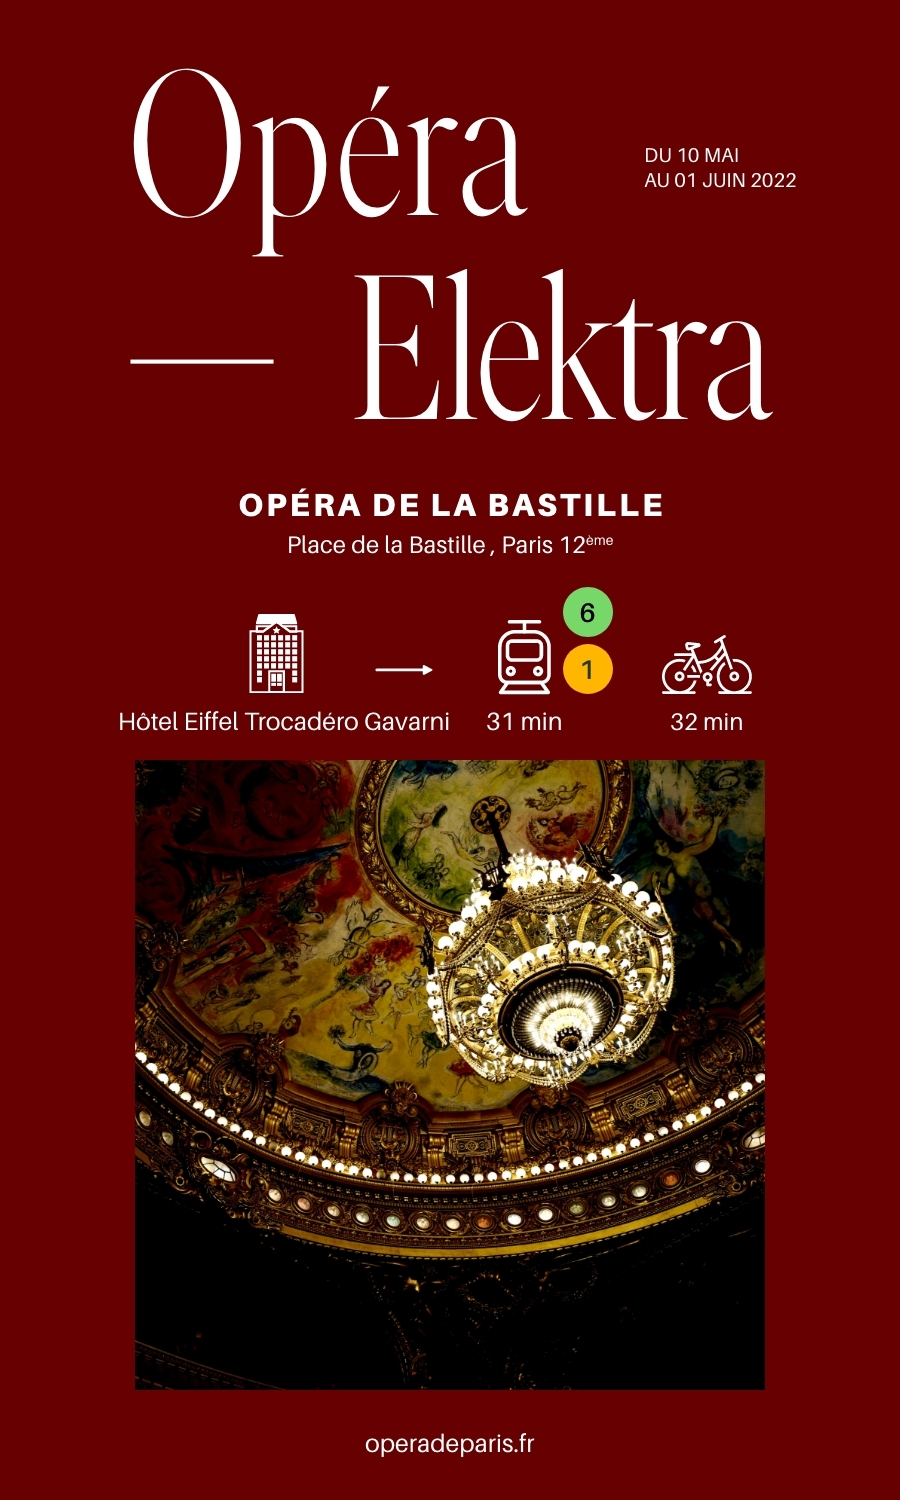 Opéra Elektra